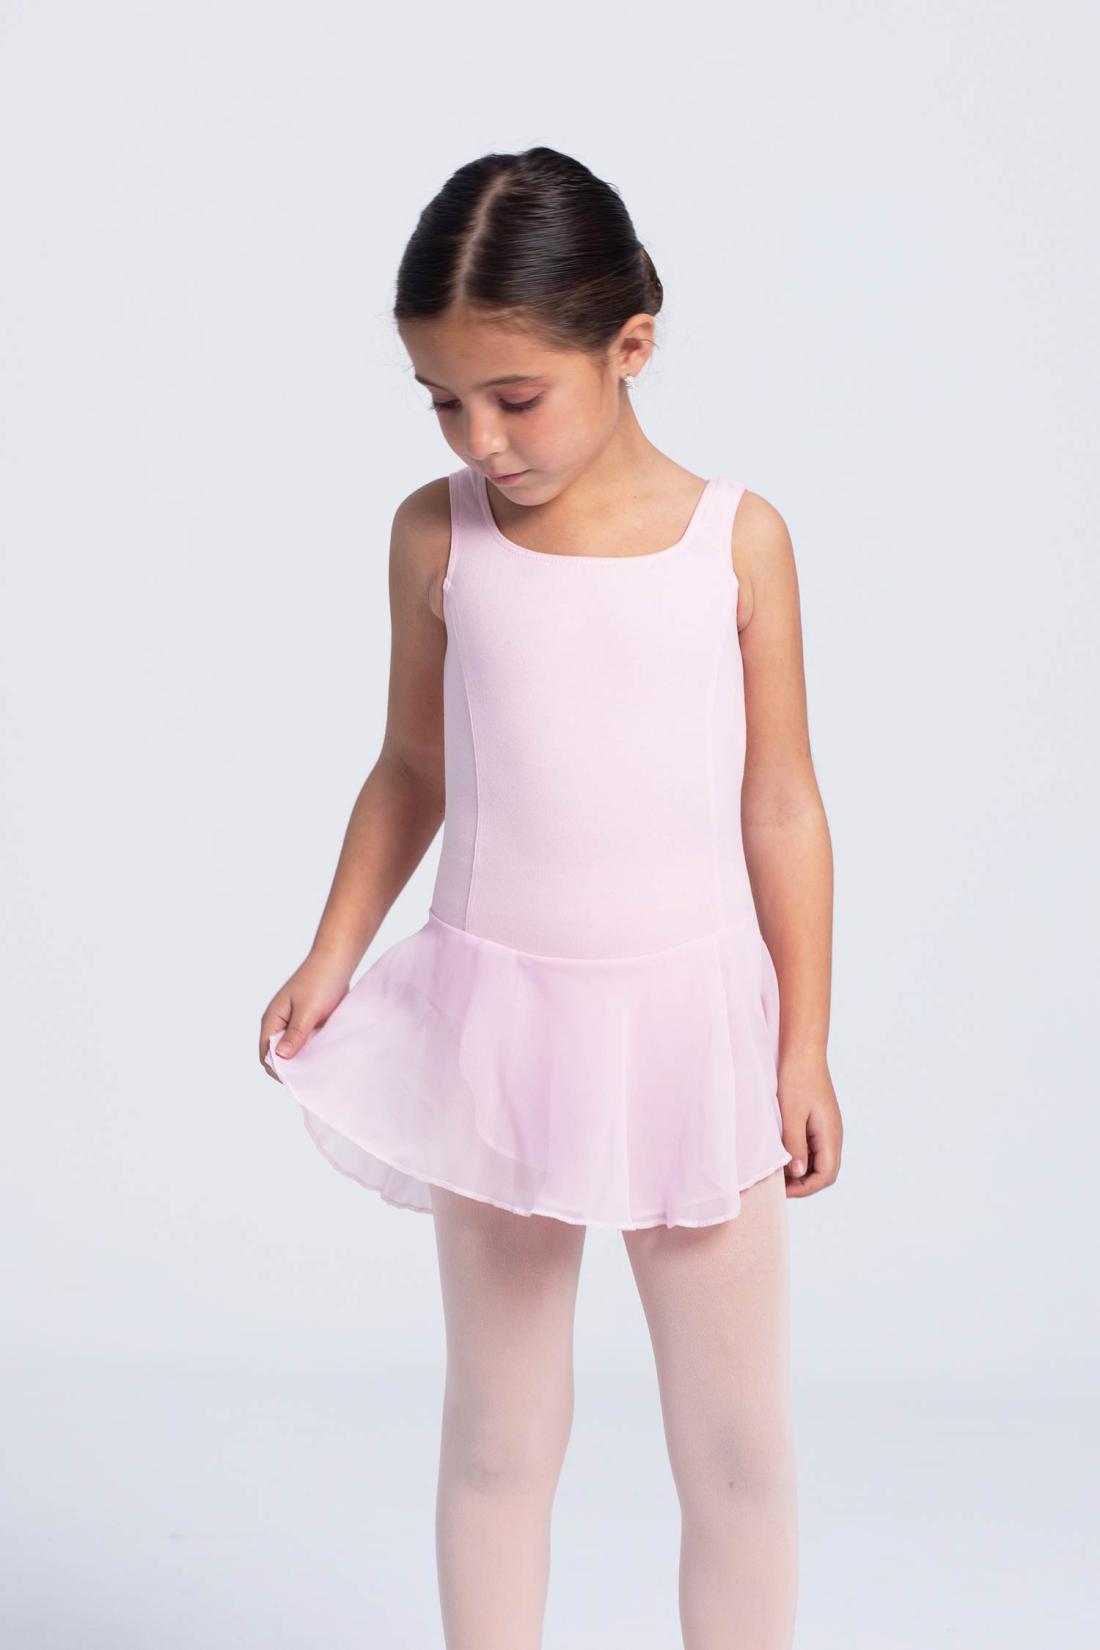 Vestido Tirantes Rosa de Ballet Niña, Ropa Danza Infantil